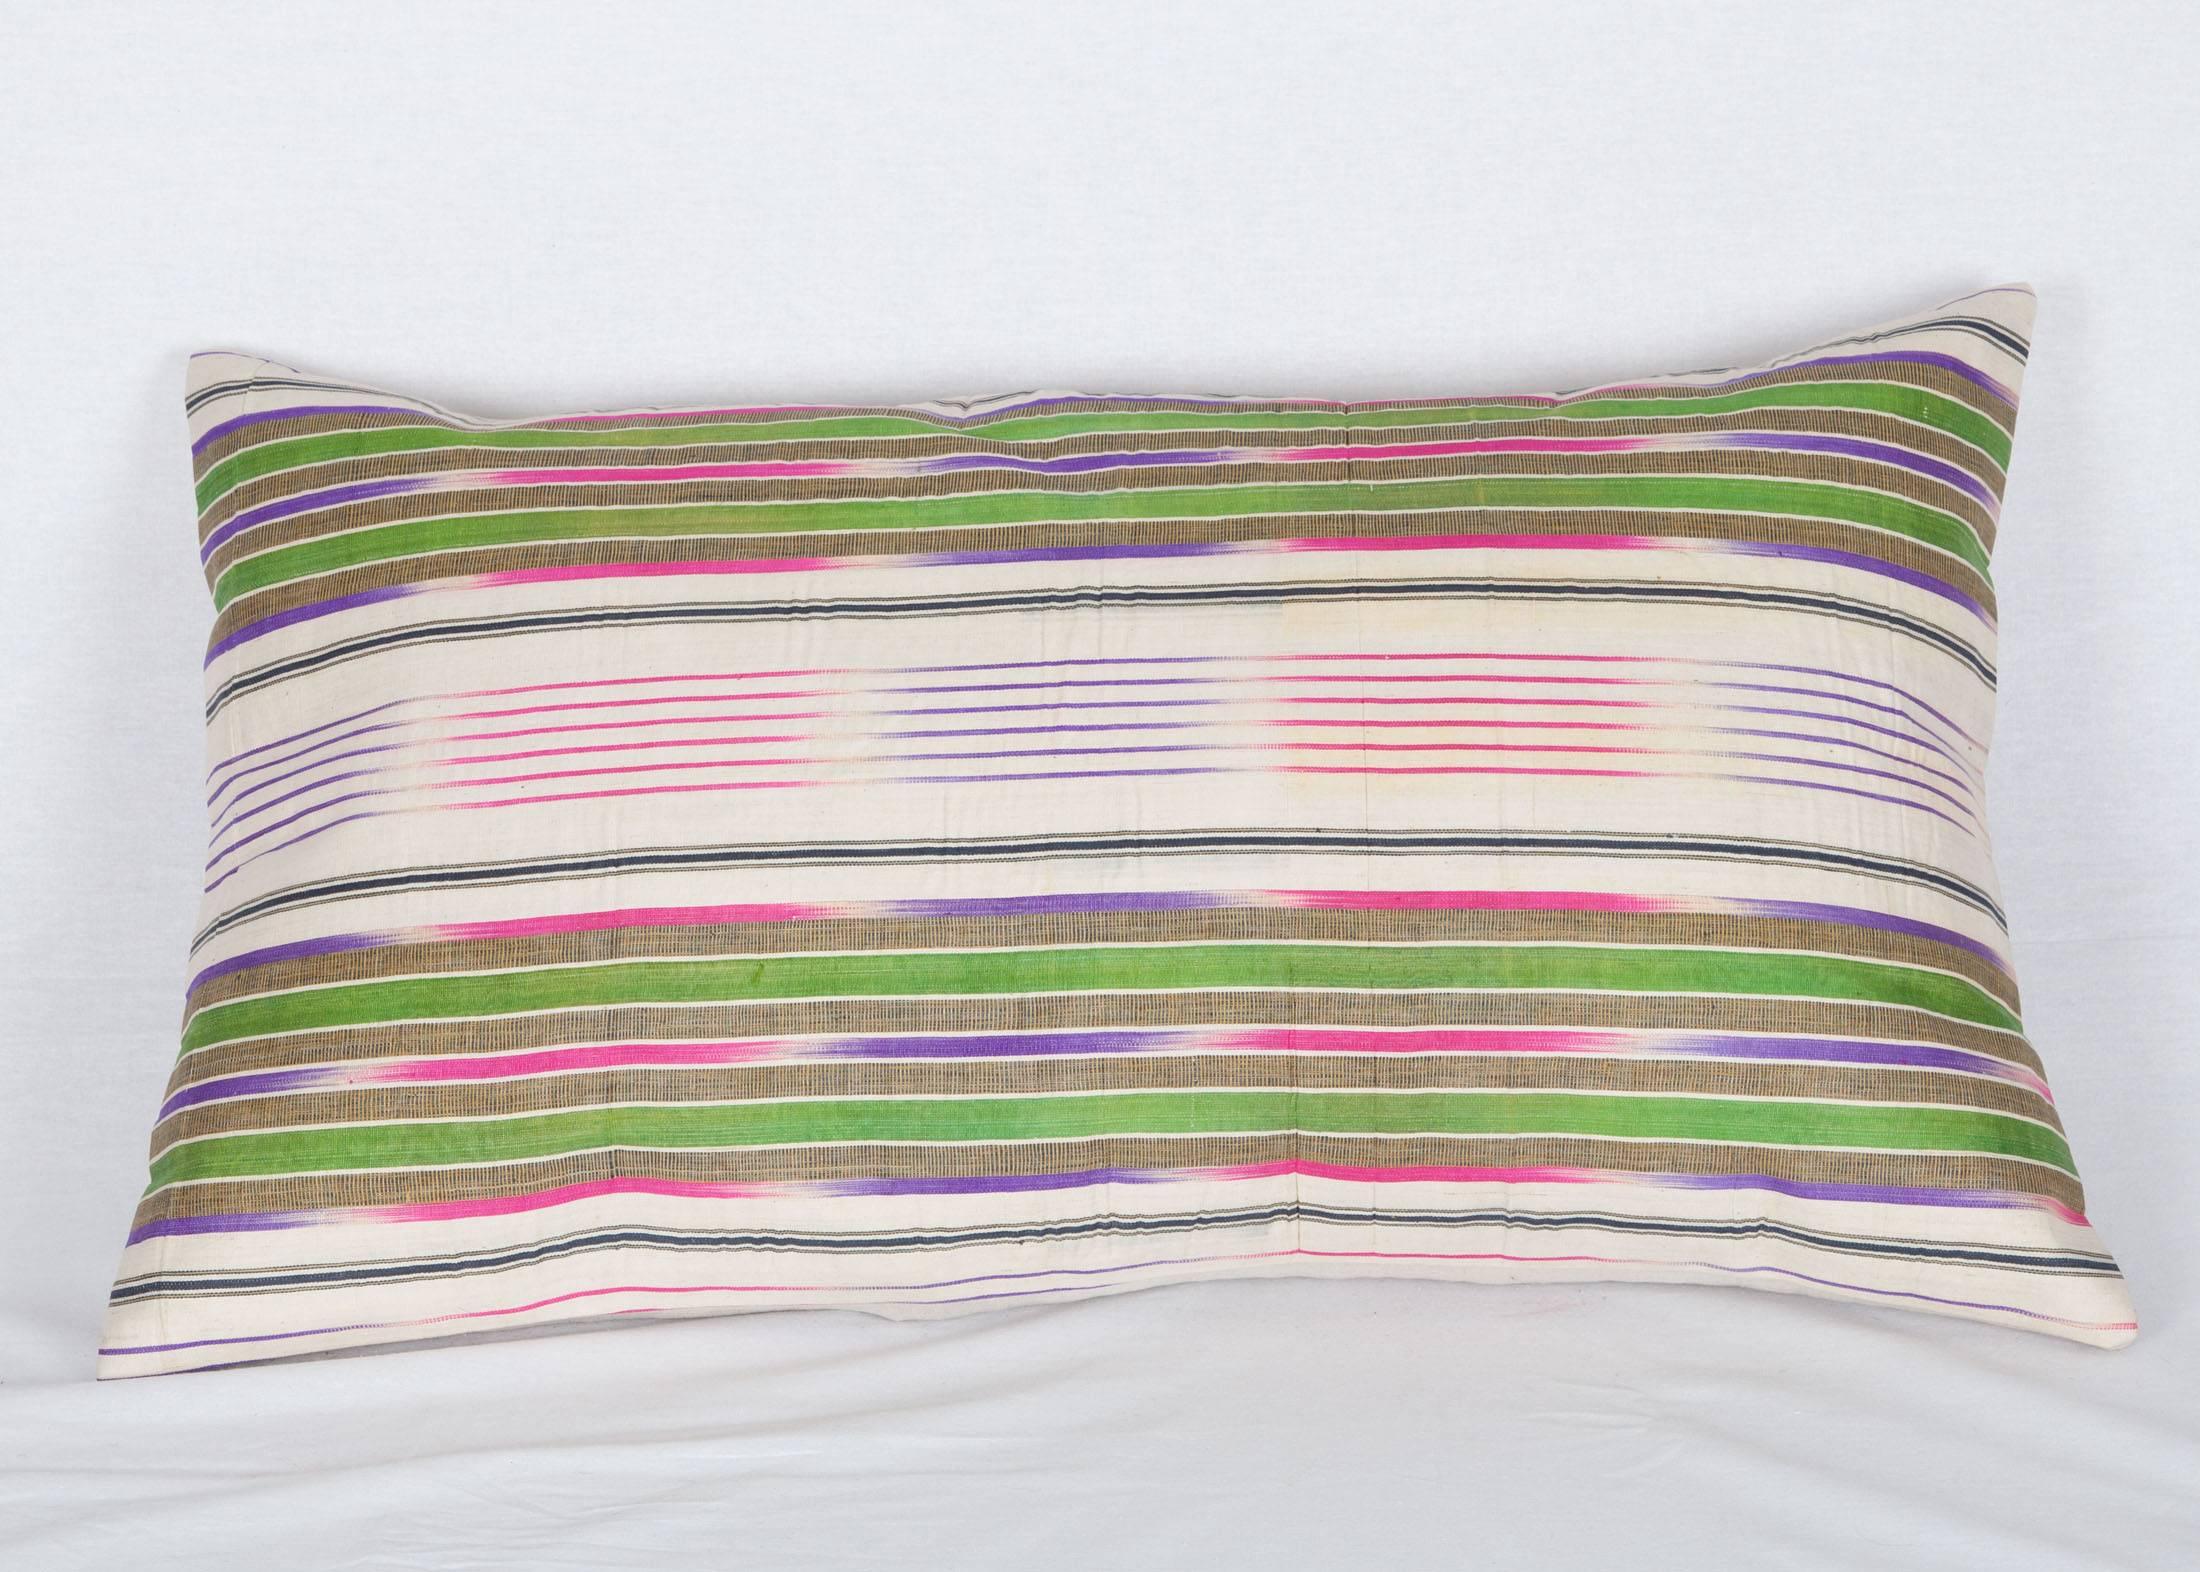 L'oreiller est fait d'un tissu Ikat du début du 20e siècle, chaîne en soie, trame en coton.
Il n'est pas livré avec un insert mais avec un sac fait à la taille et en coton pour accueillir la garniture.
Le support est en lin.

Veuillez noter que